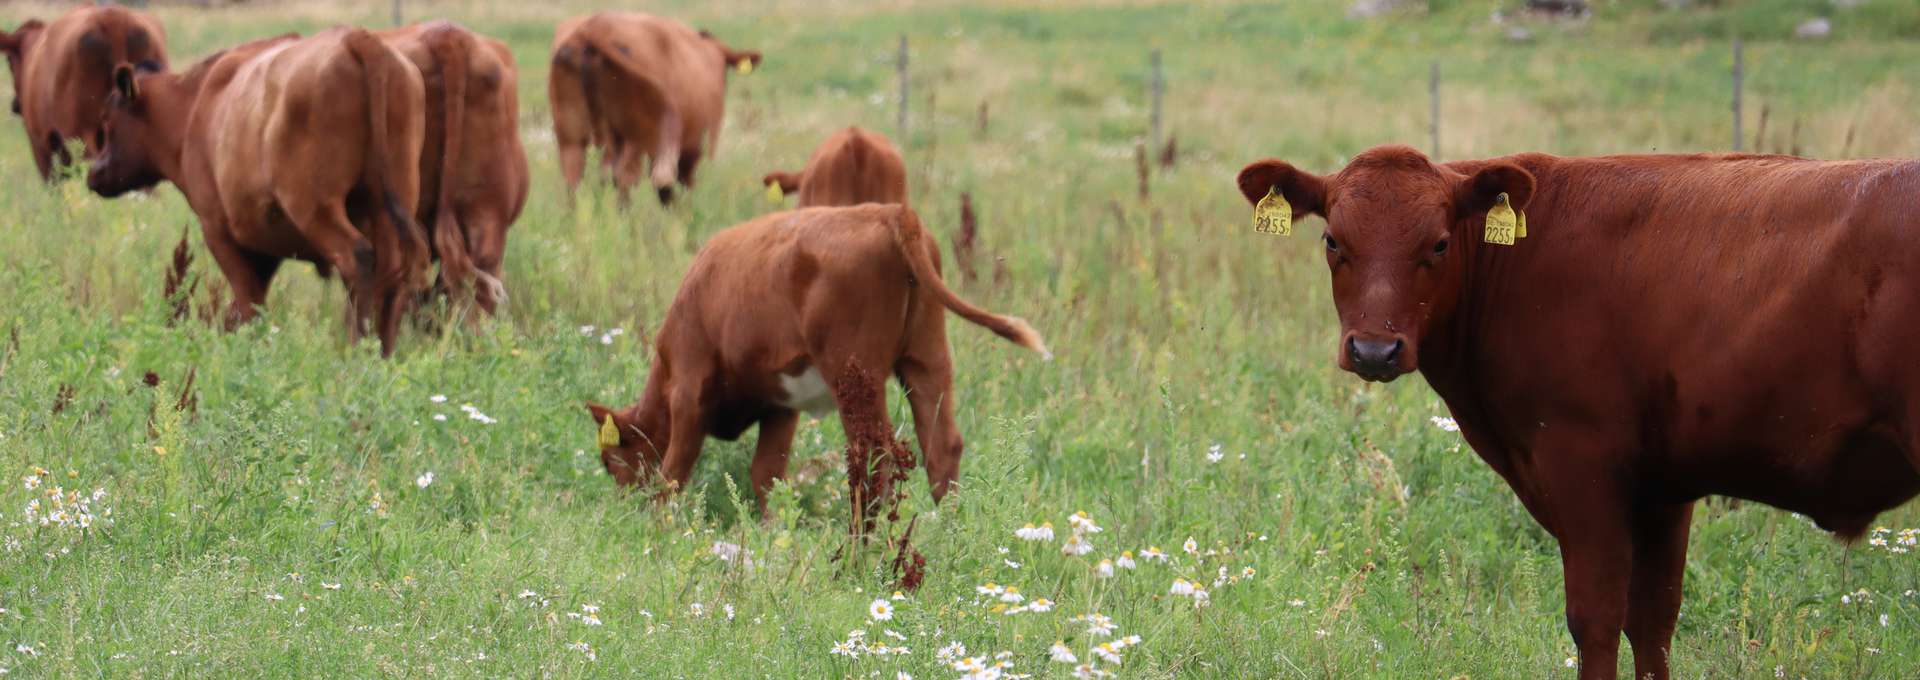 Kor av rasen rödkullor står på en äng. En ko tittar in i kameran